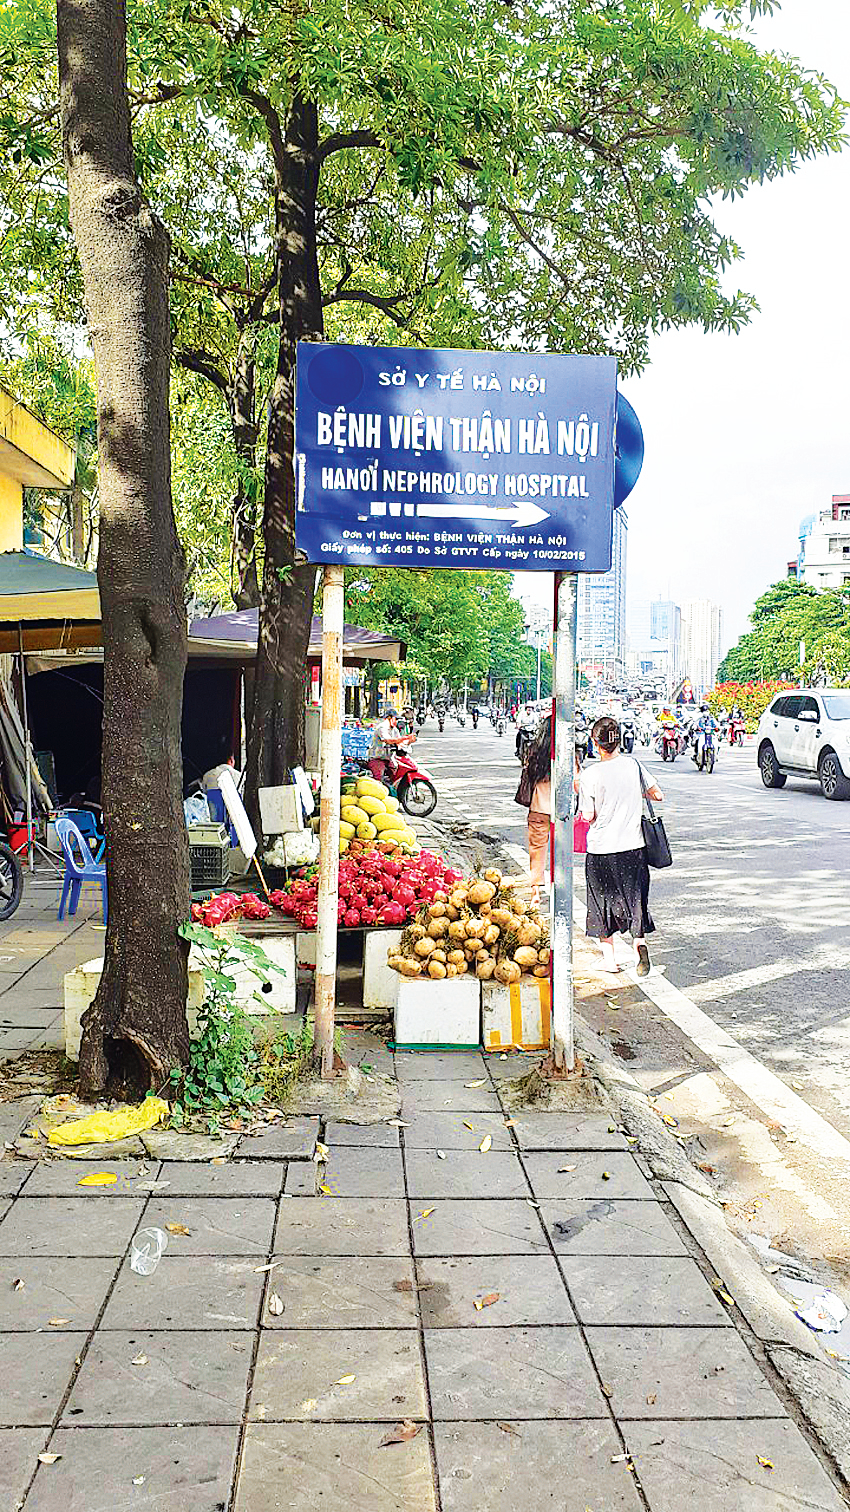 Vỉa hè cạnh ngõ 99 đường Nguyễn Chí Thanh bị lấn chiếm - Ảnh 1